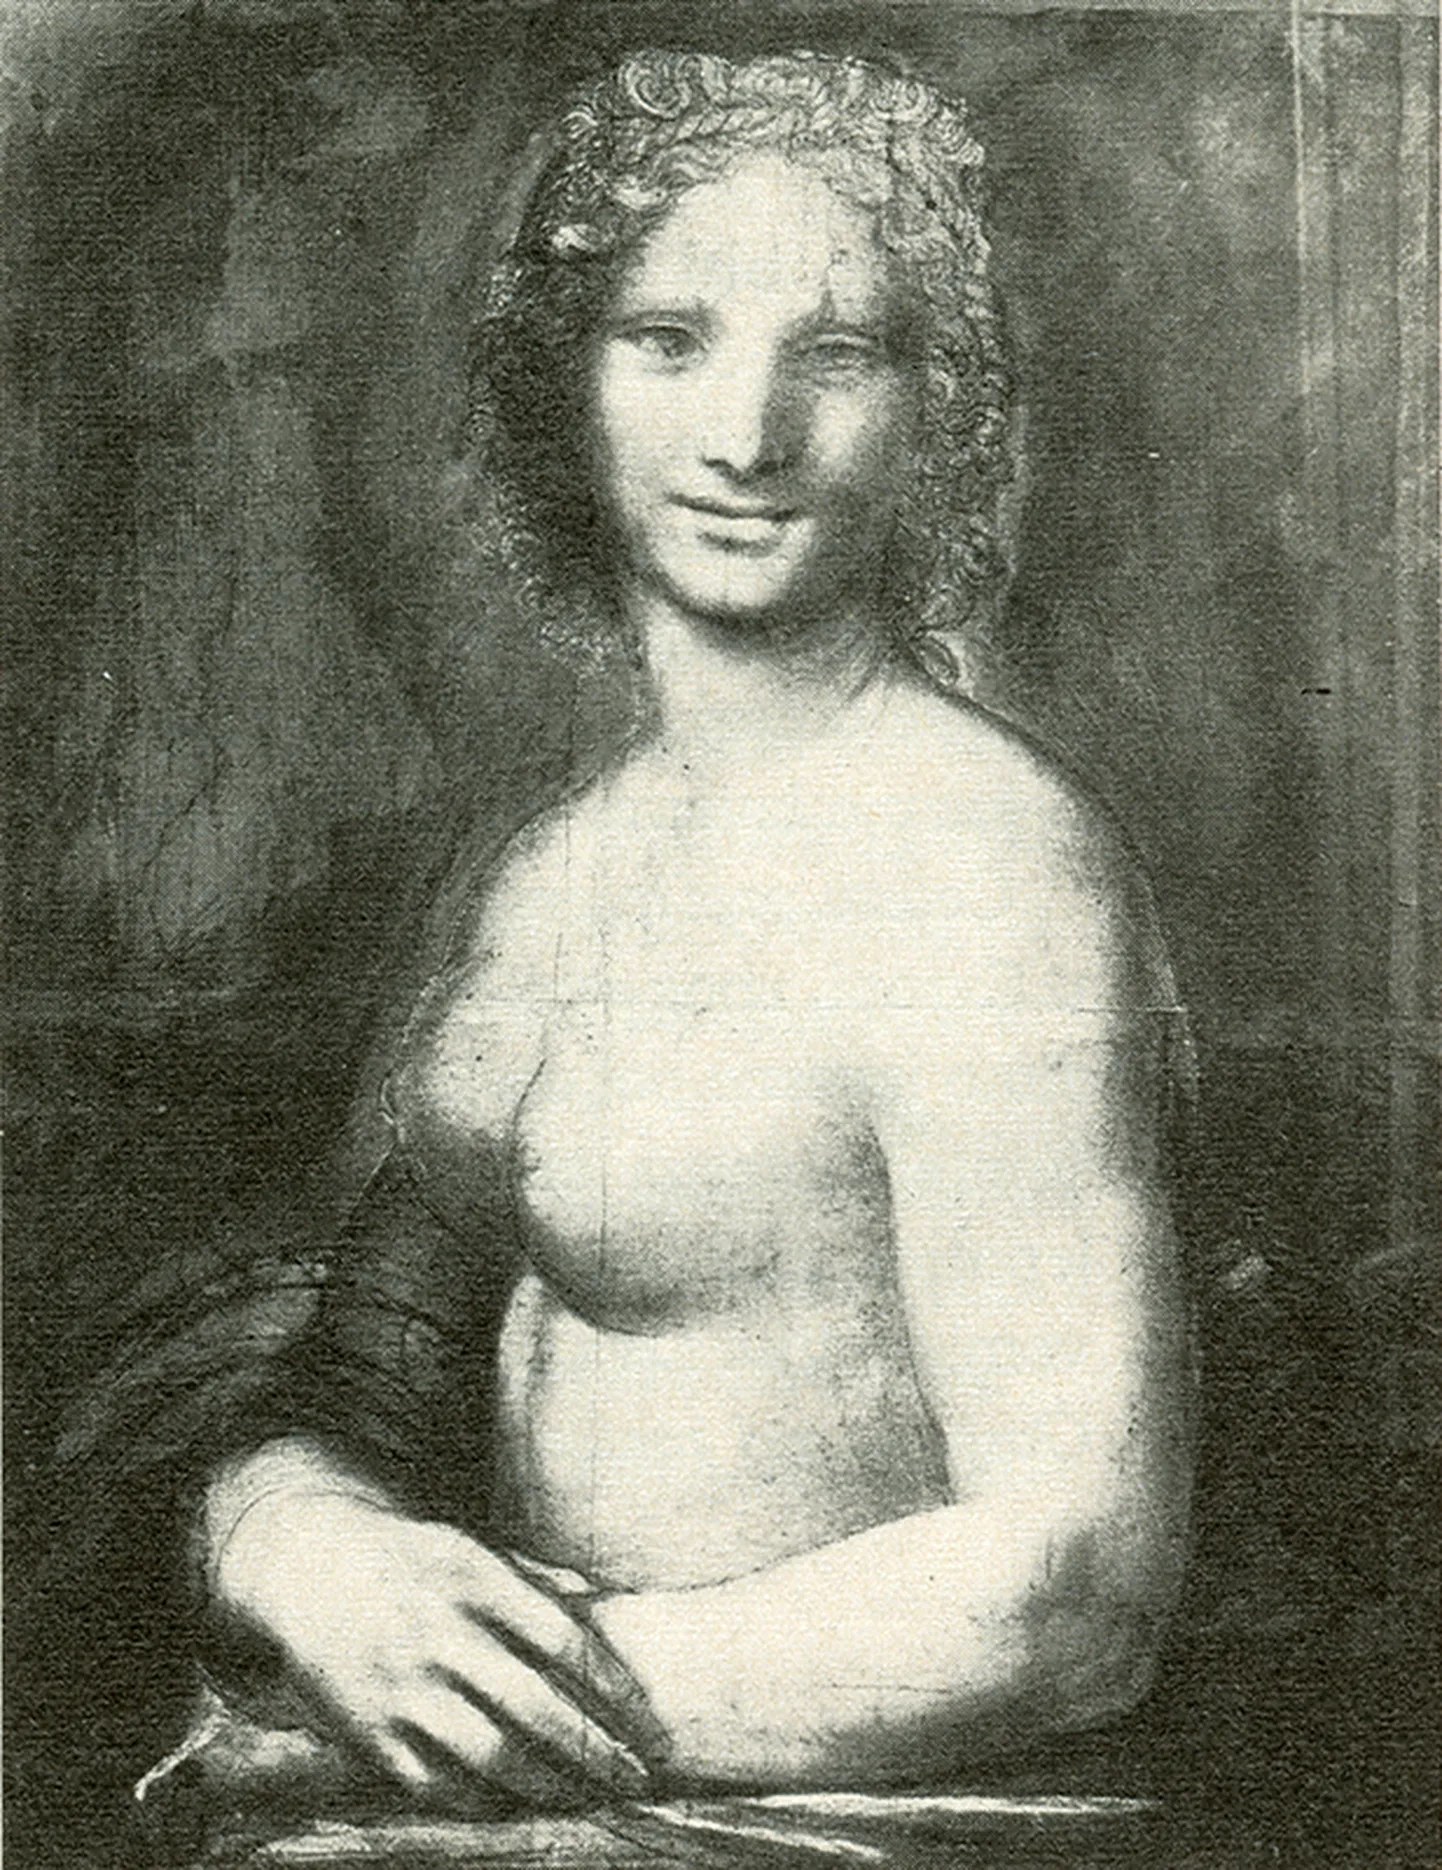 Zīmējums "Monna Vanna", ko, iespējams, radījis Leonardo da Vinči.